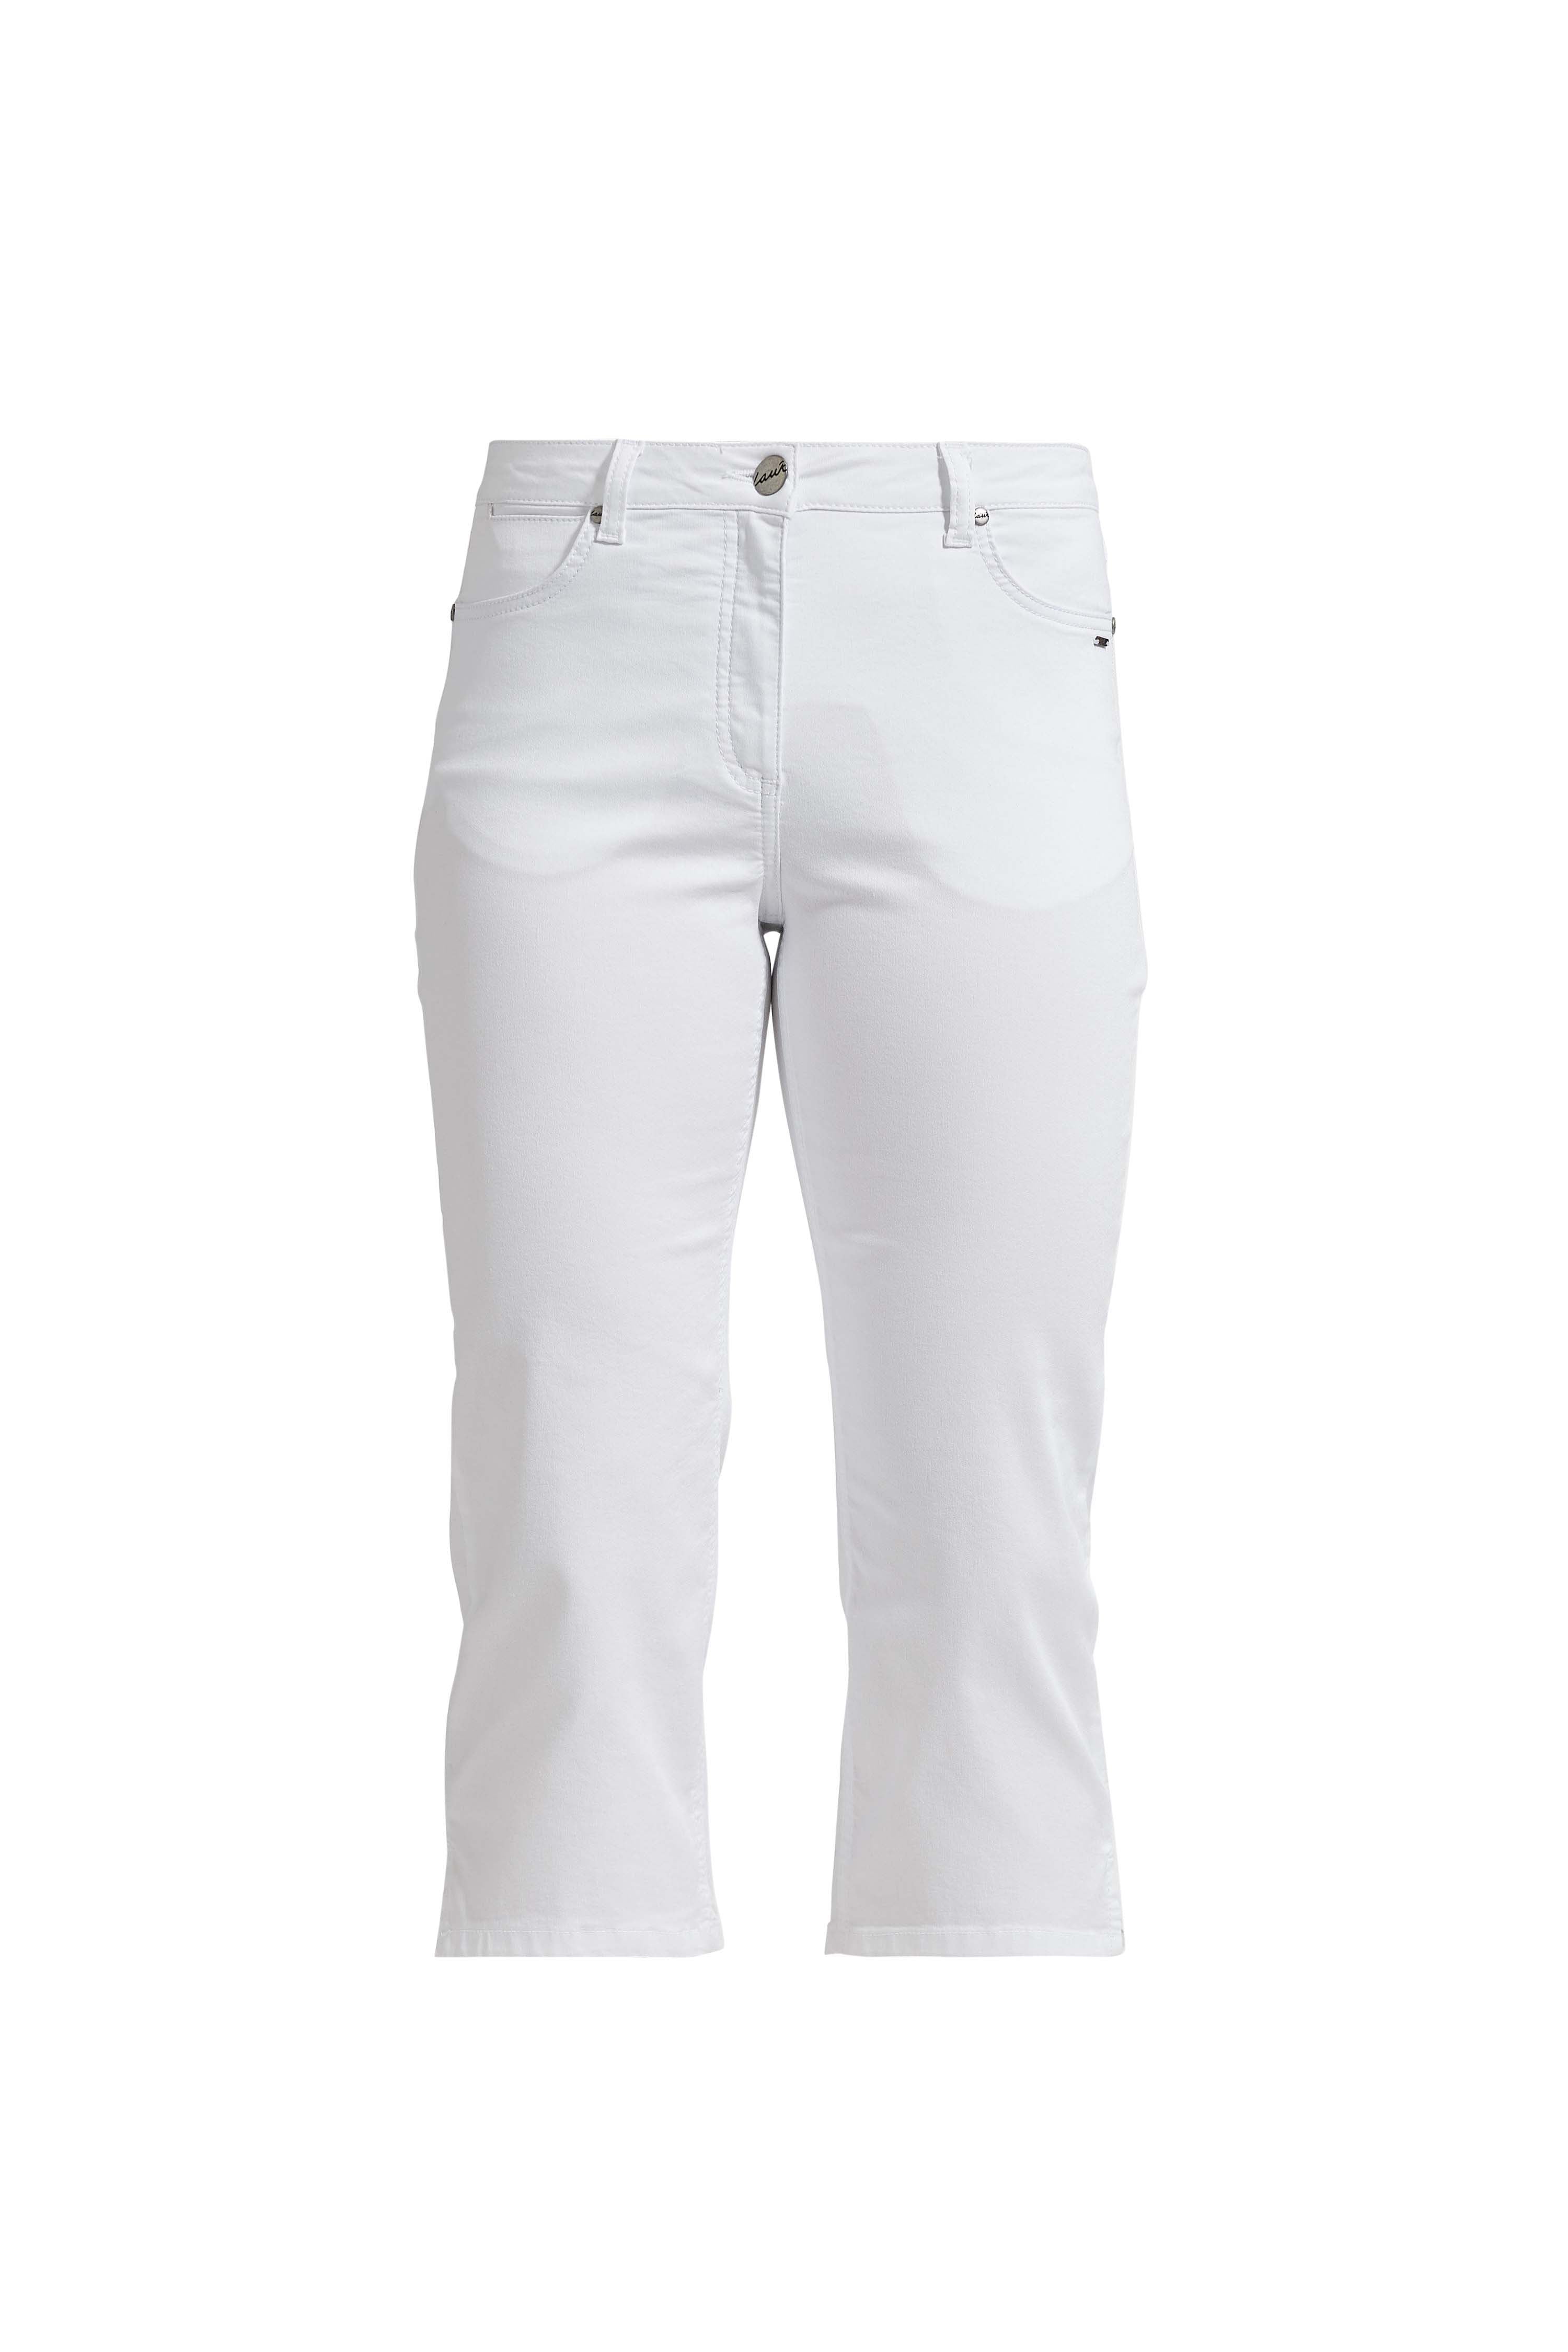 LAURIE  Charlotte Regular Capri Housut Trousers REGULAR 10100 White